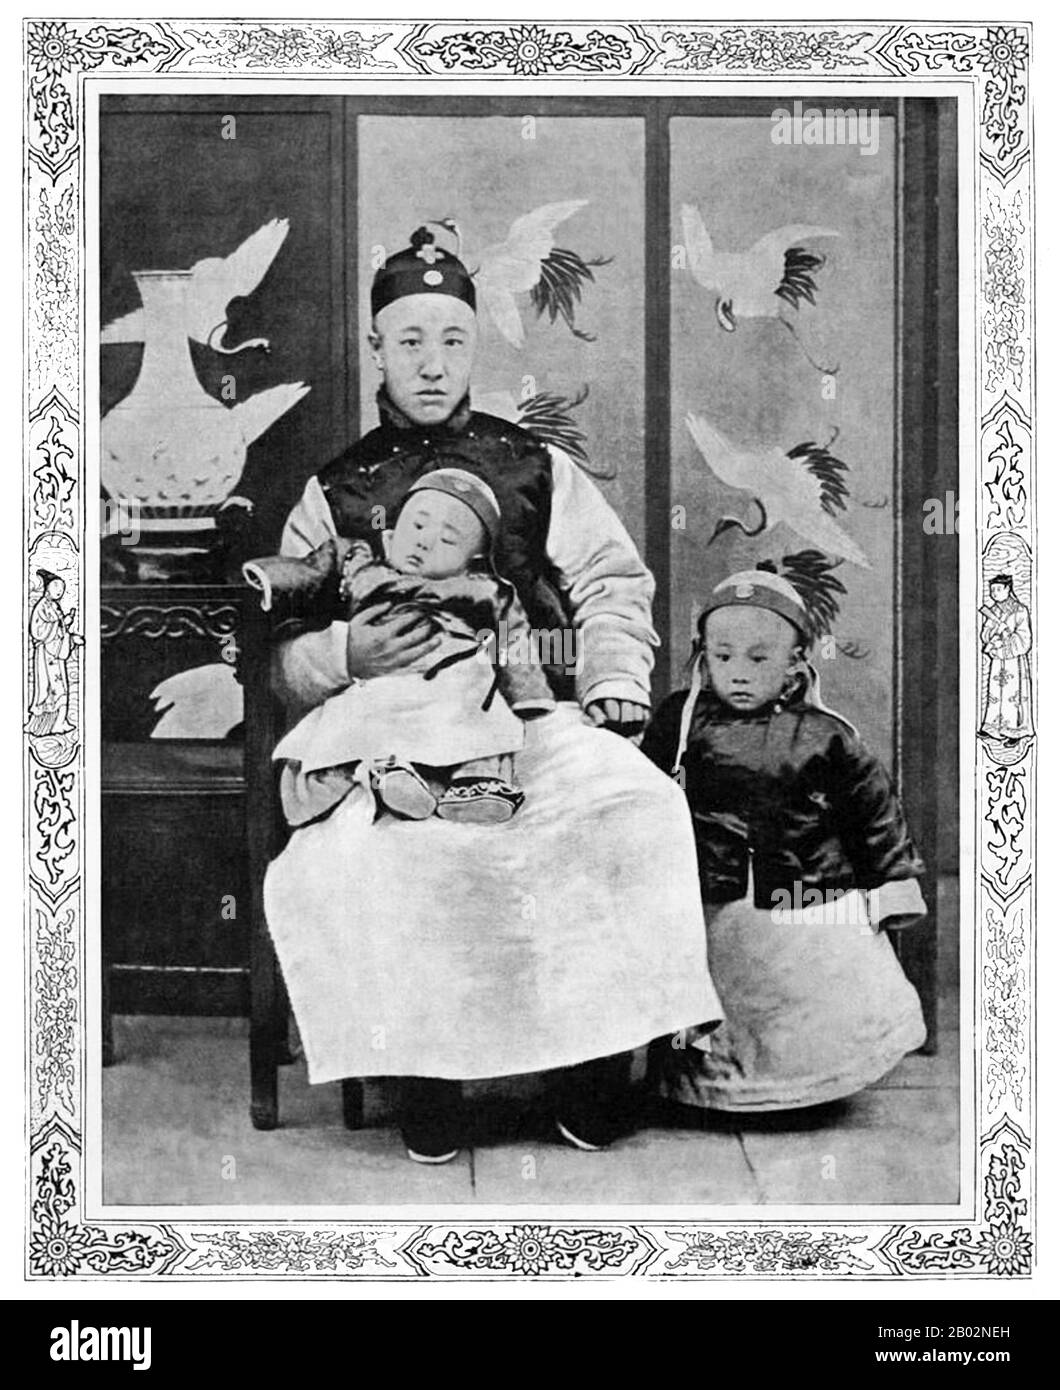 Aisin-Gioro pu Yi (7 febbraio 1906 – 17 ottobre 1967), della famiglia governante Manchu Aisin Gioro, fu l'ultimo imperatore della Cina. Regnò in due periodi tra il 1908 e il 1917, dapprima come imperatore Xuantong dal 1908 al 1912, e nominalmente come imperatore marionette non regnante per dodici giorni nel 1917. Era il dodicesimo e ultimo membro della Dinastia Qing a governare sulla Cina vera e propria. Foto Stock